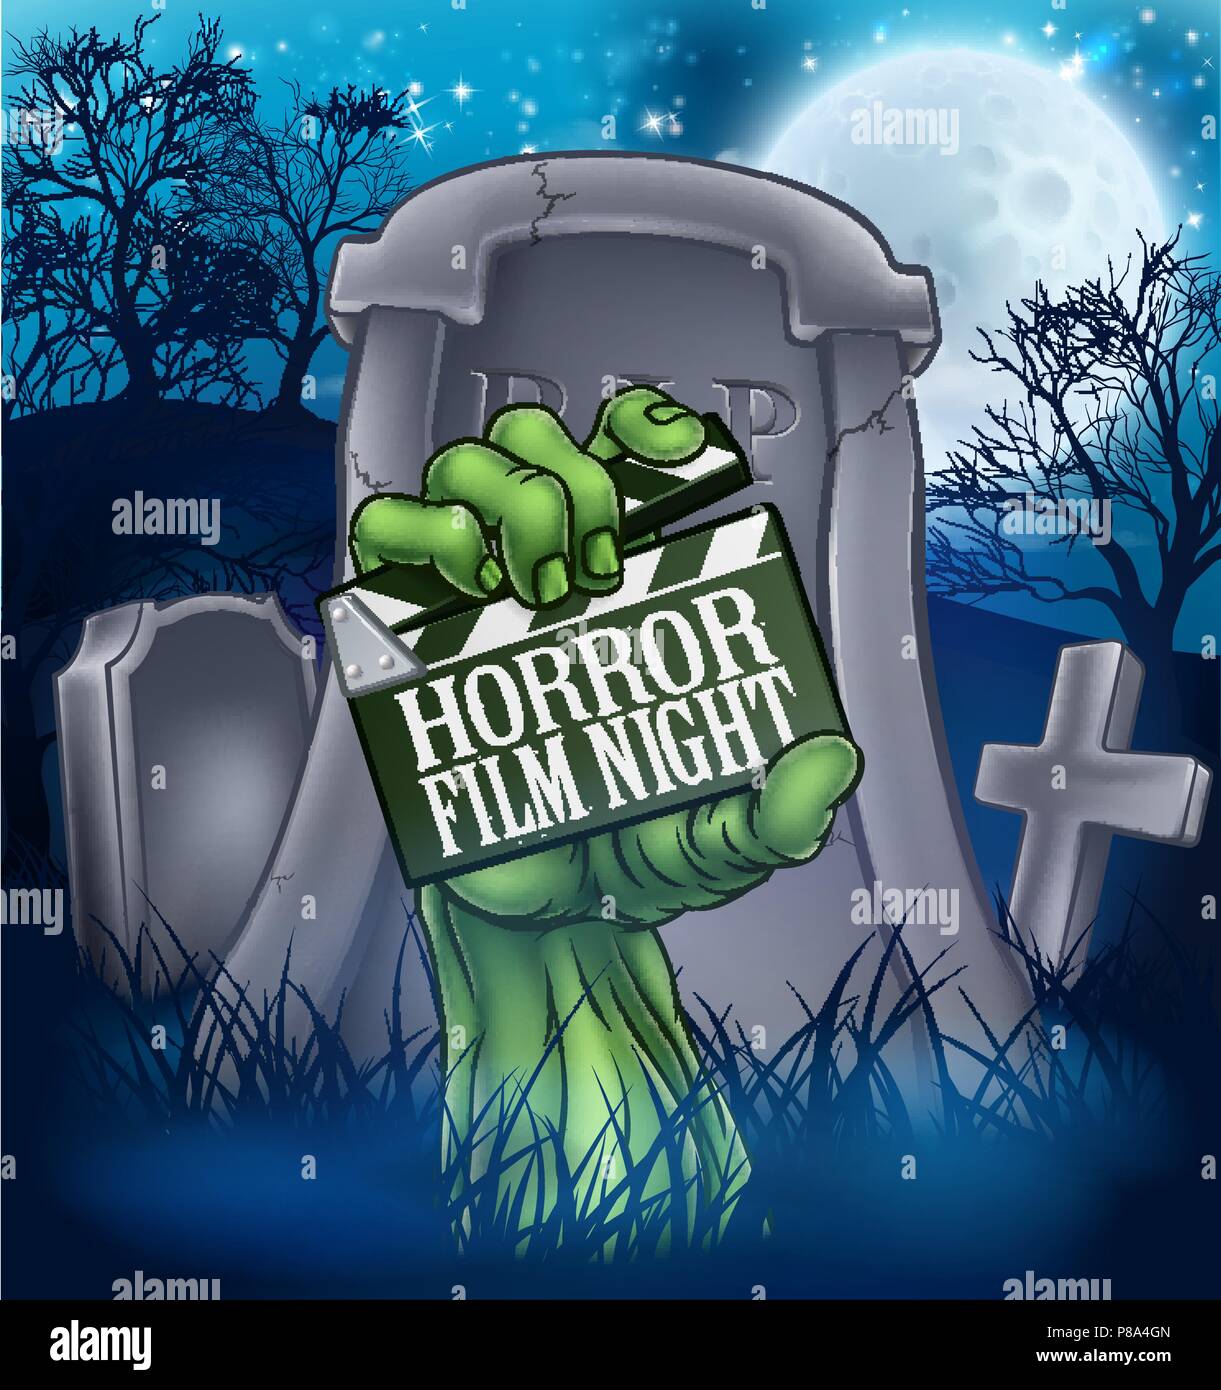 Film d'horreur Zombie ou Monster Sign Illustration de Vecteur